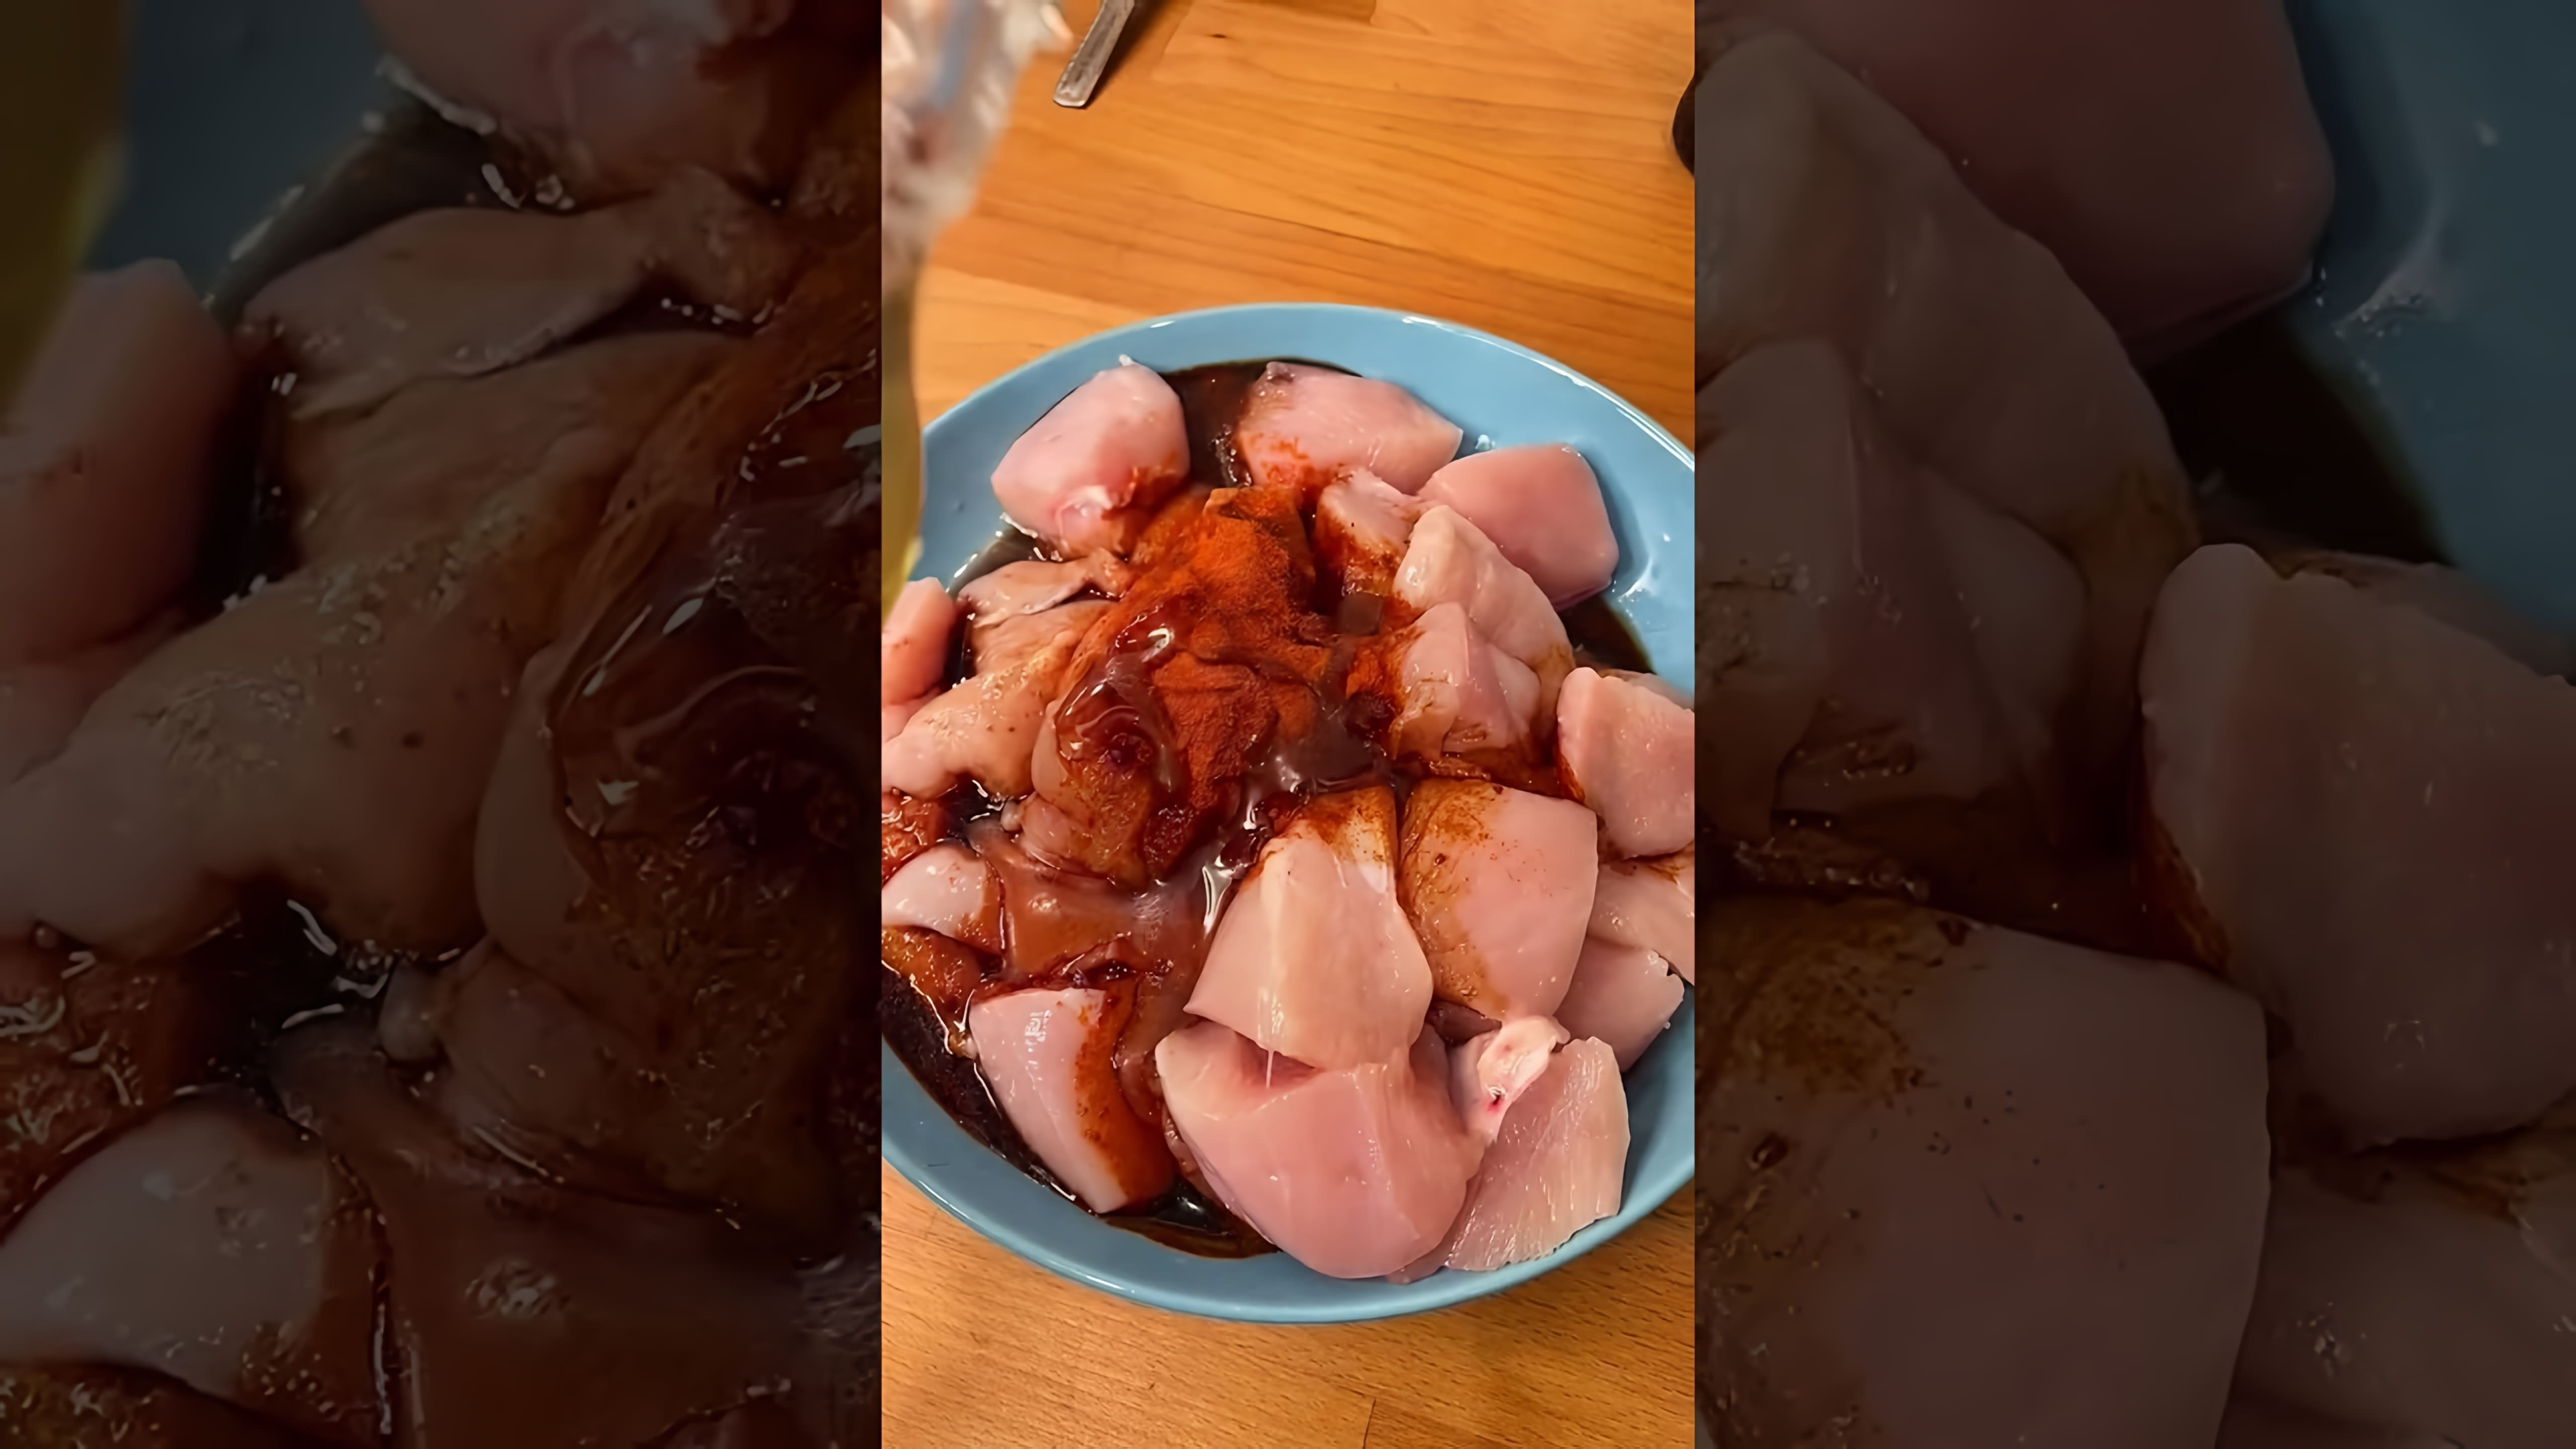 В этом видео демонстрируется процесс приготовления куриных шашлычков с соусом терияки